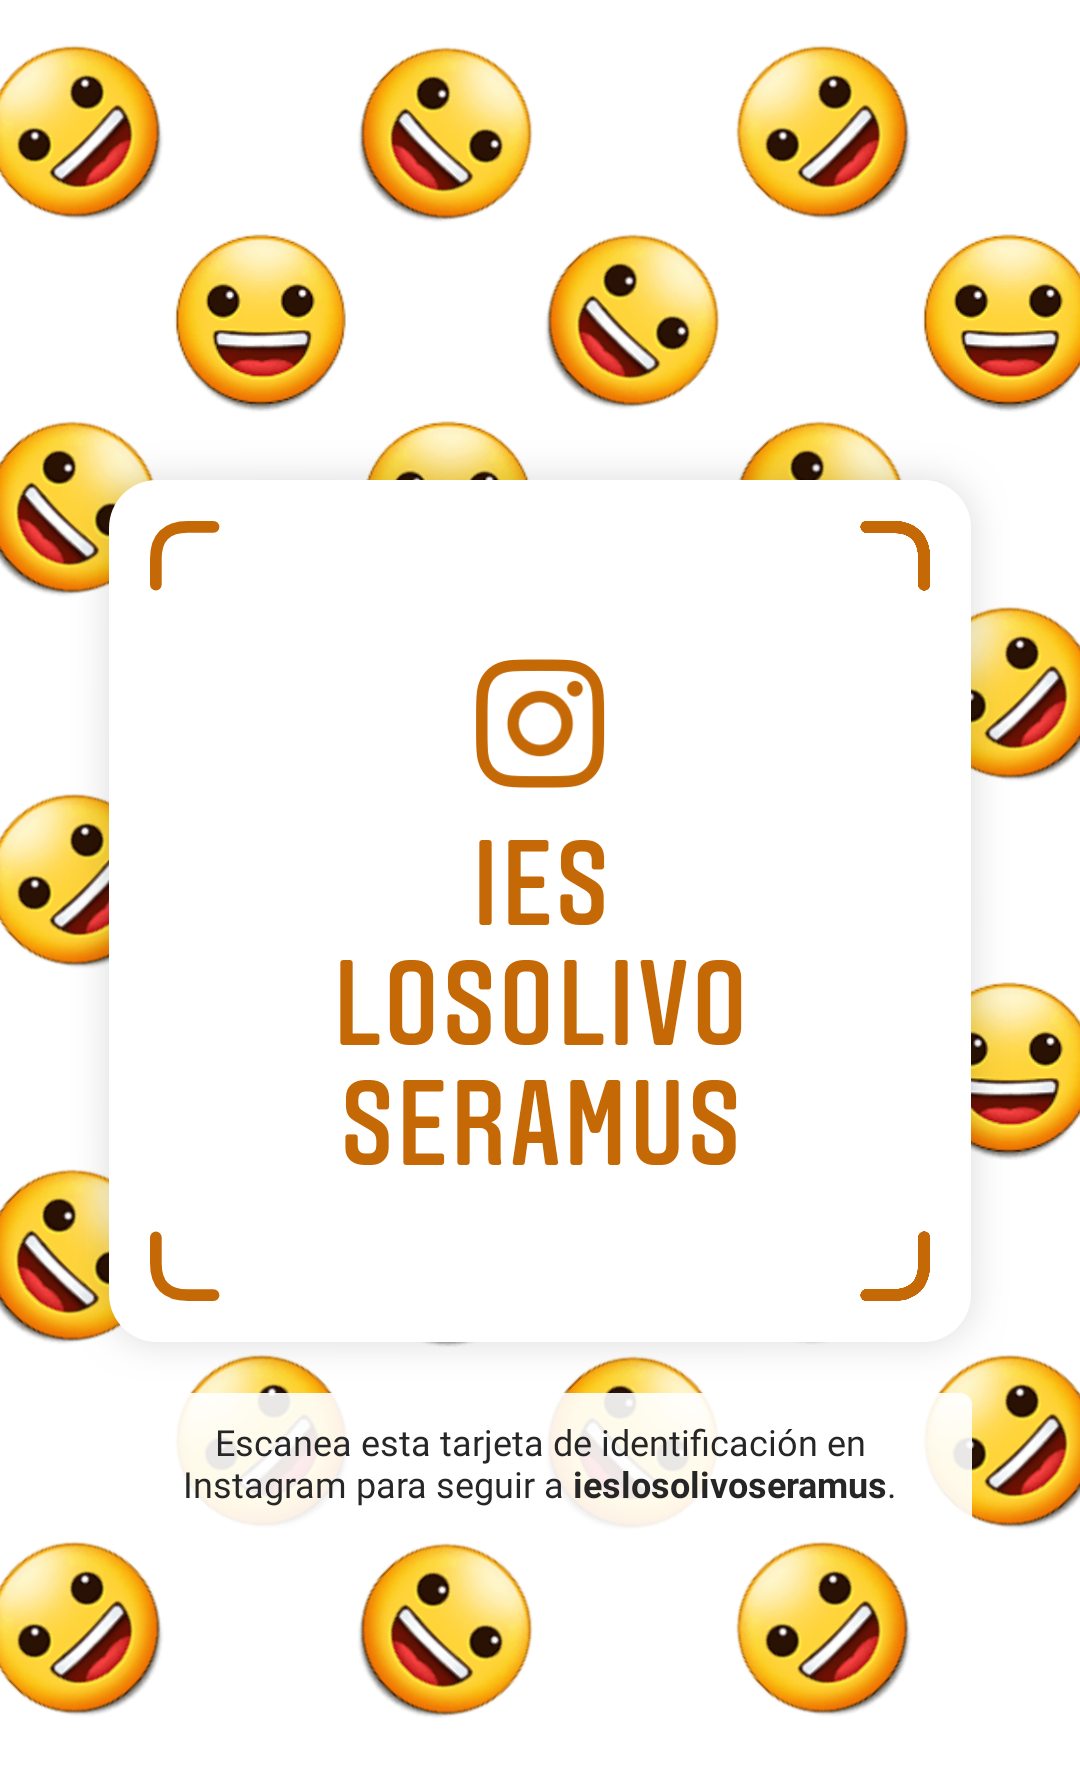 Erasmus en Instagram